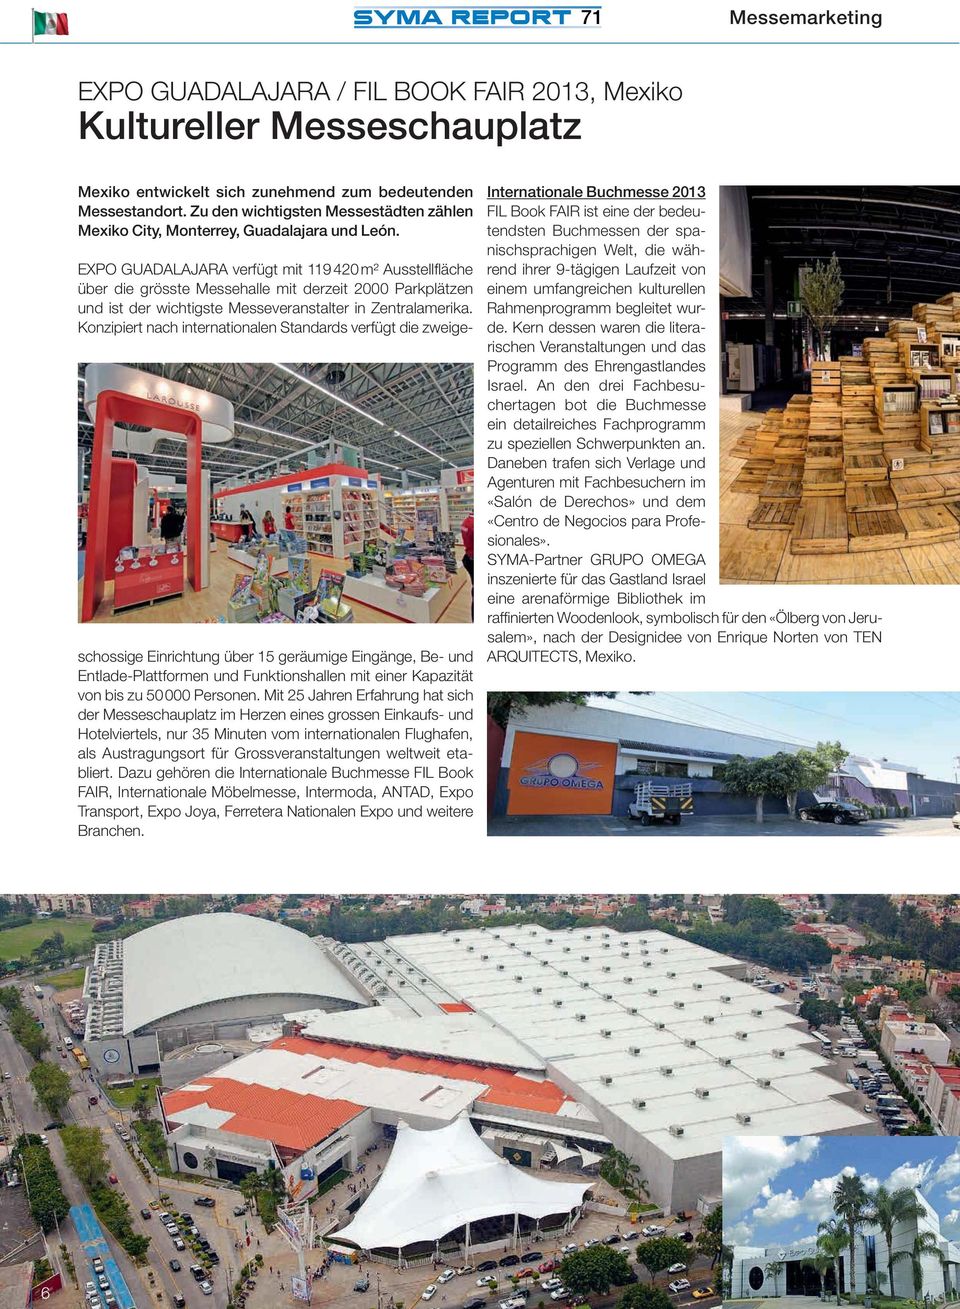 EXPO GUADALAJARA verfügt mit 119 420 m² Ausstellfläche über die grösste Messehalle mit derzeit 2000 Parkplätzen und ist der wichtigste Messeveranstalter in Zentralamerika.